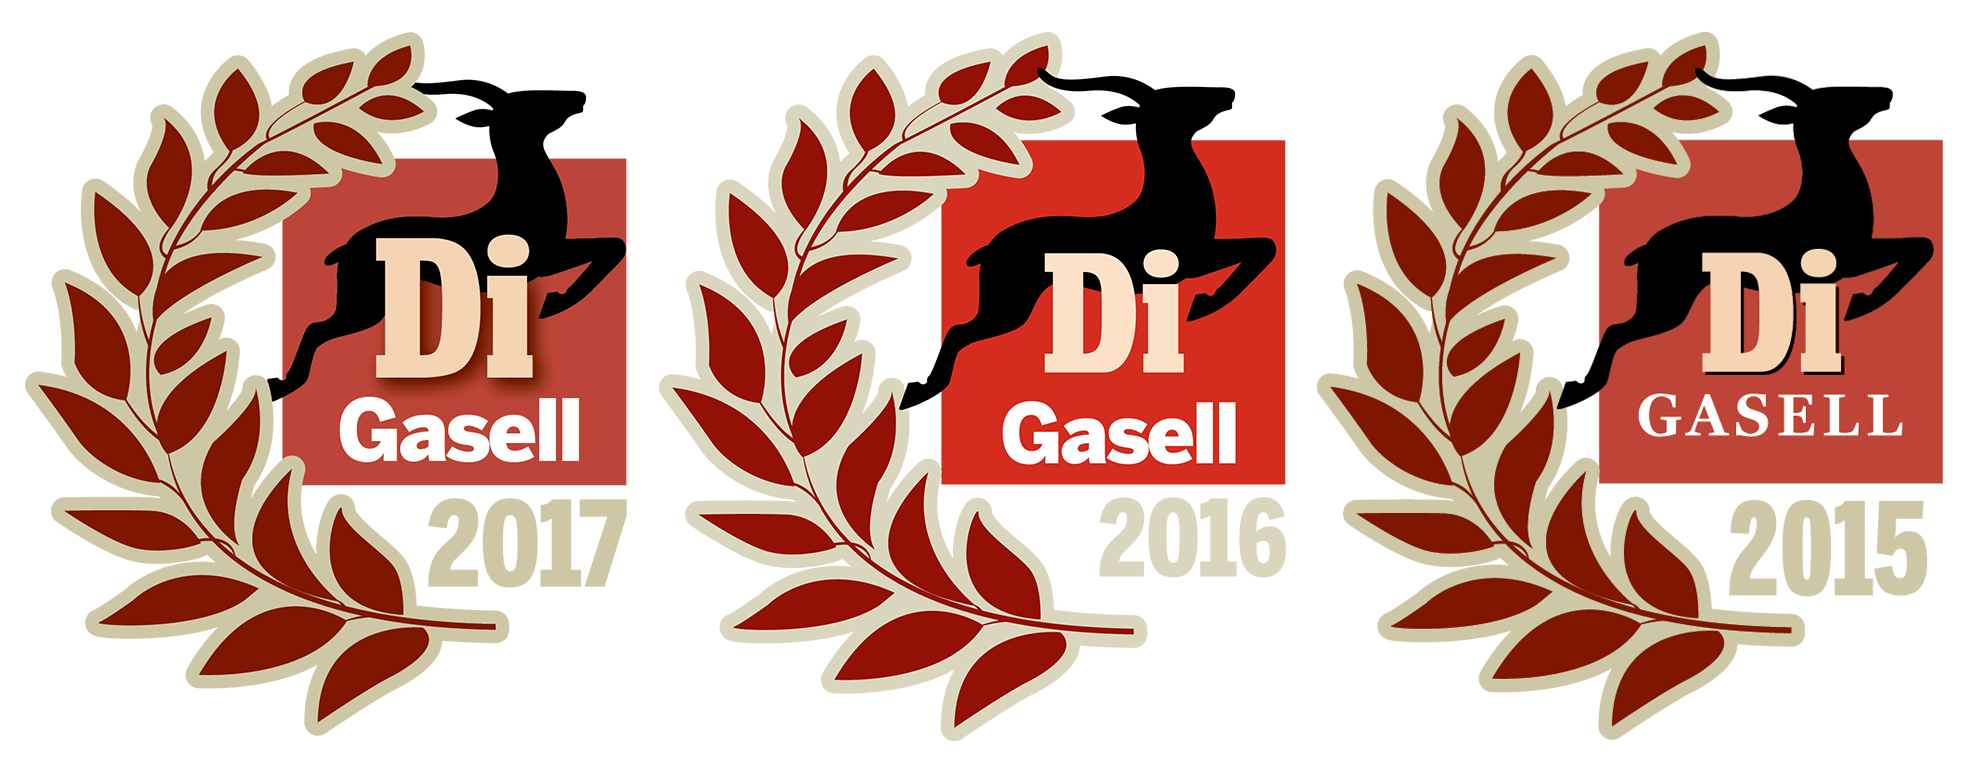 gasellogga 2015-2017.png